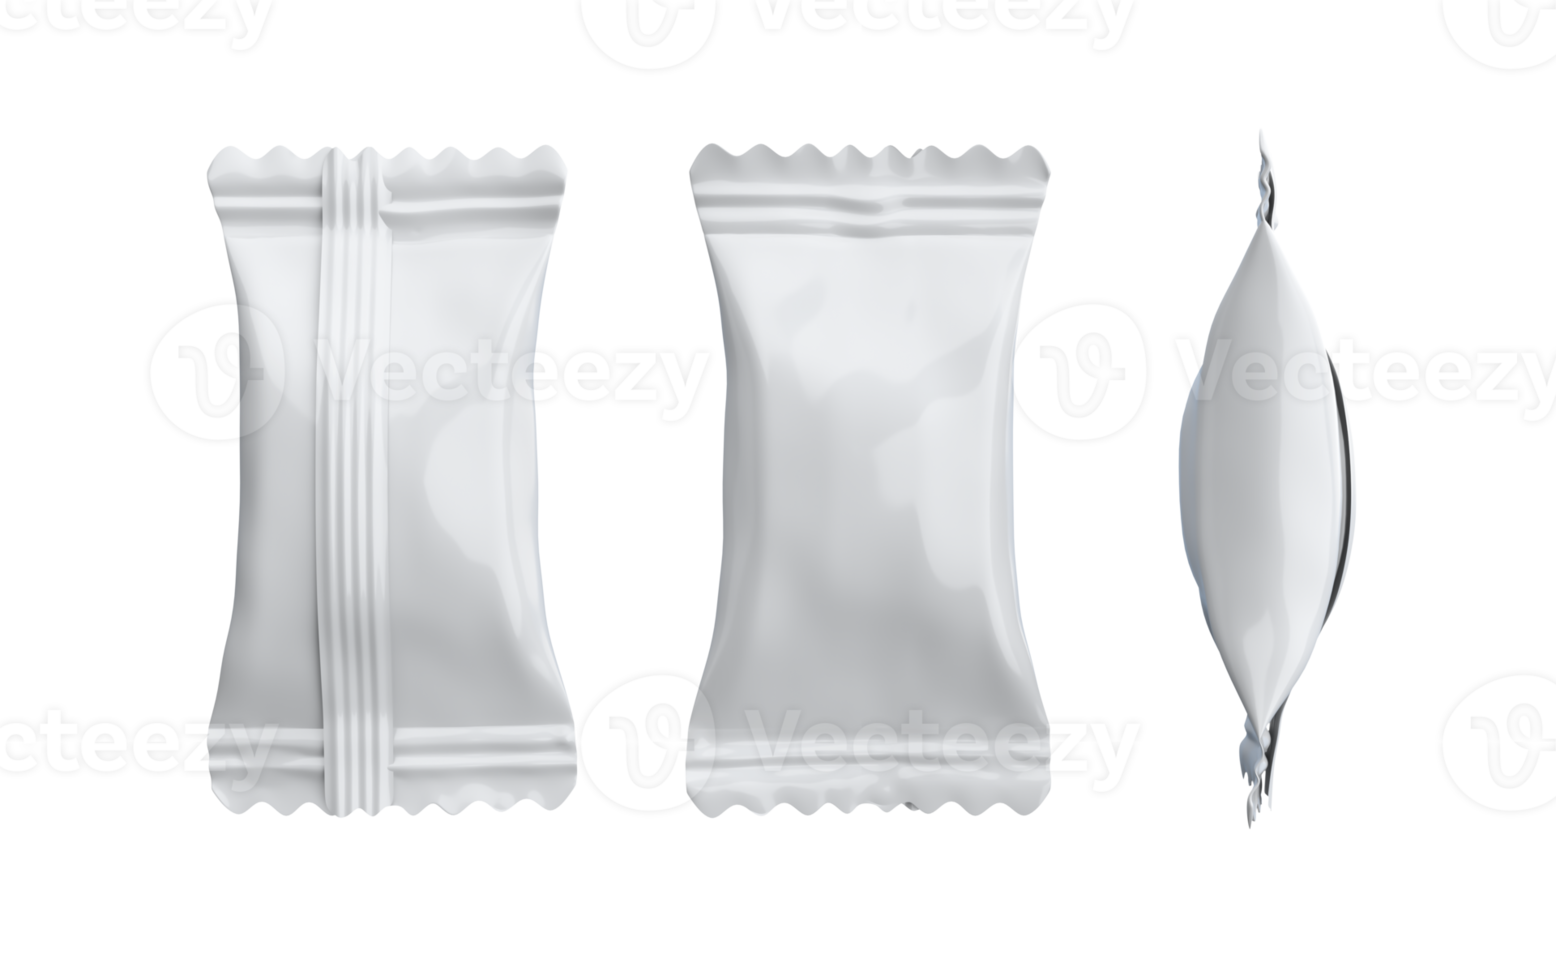 confezione di caramelle confezione in polietilene bianco, illustrazione 3d di snack bar png